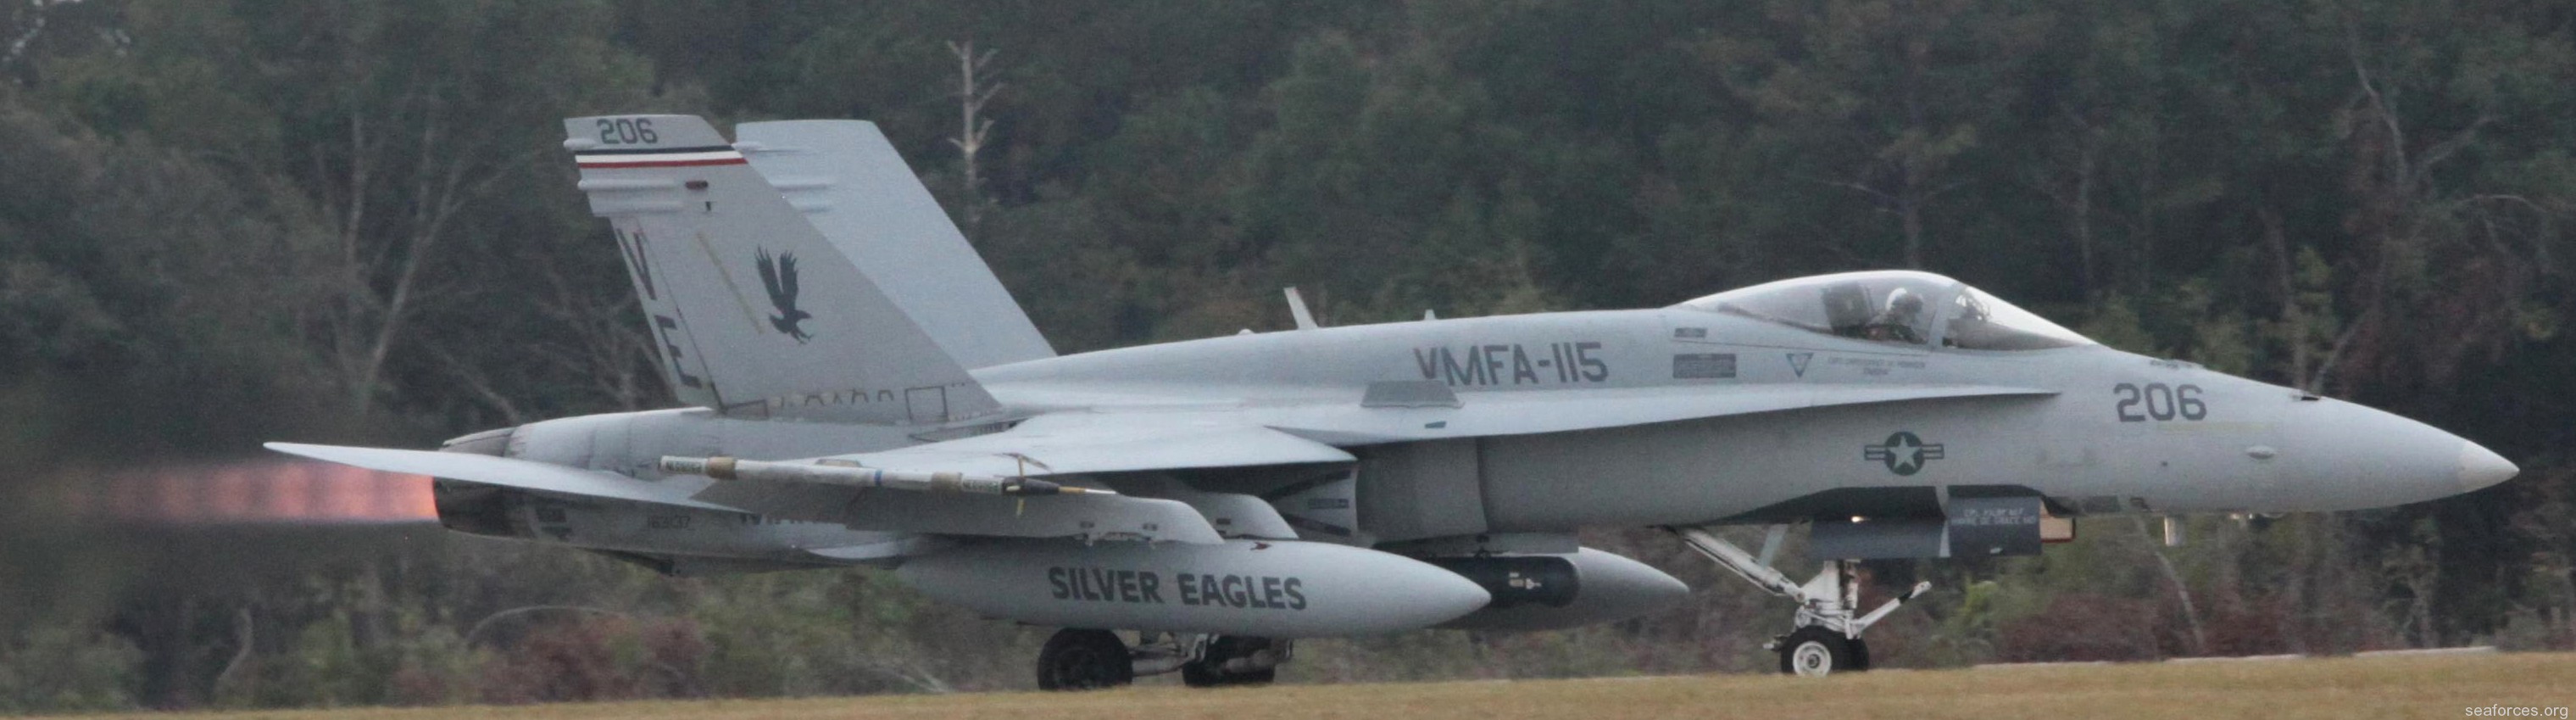 vmfa-115 silver eagles marine fighter attack squadron f/a-18a+ hornet 73